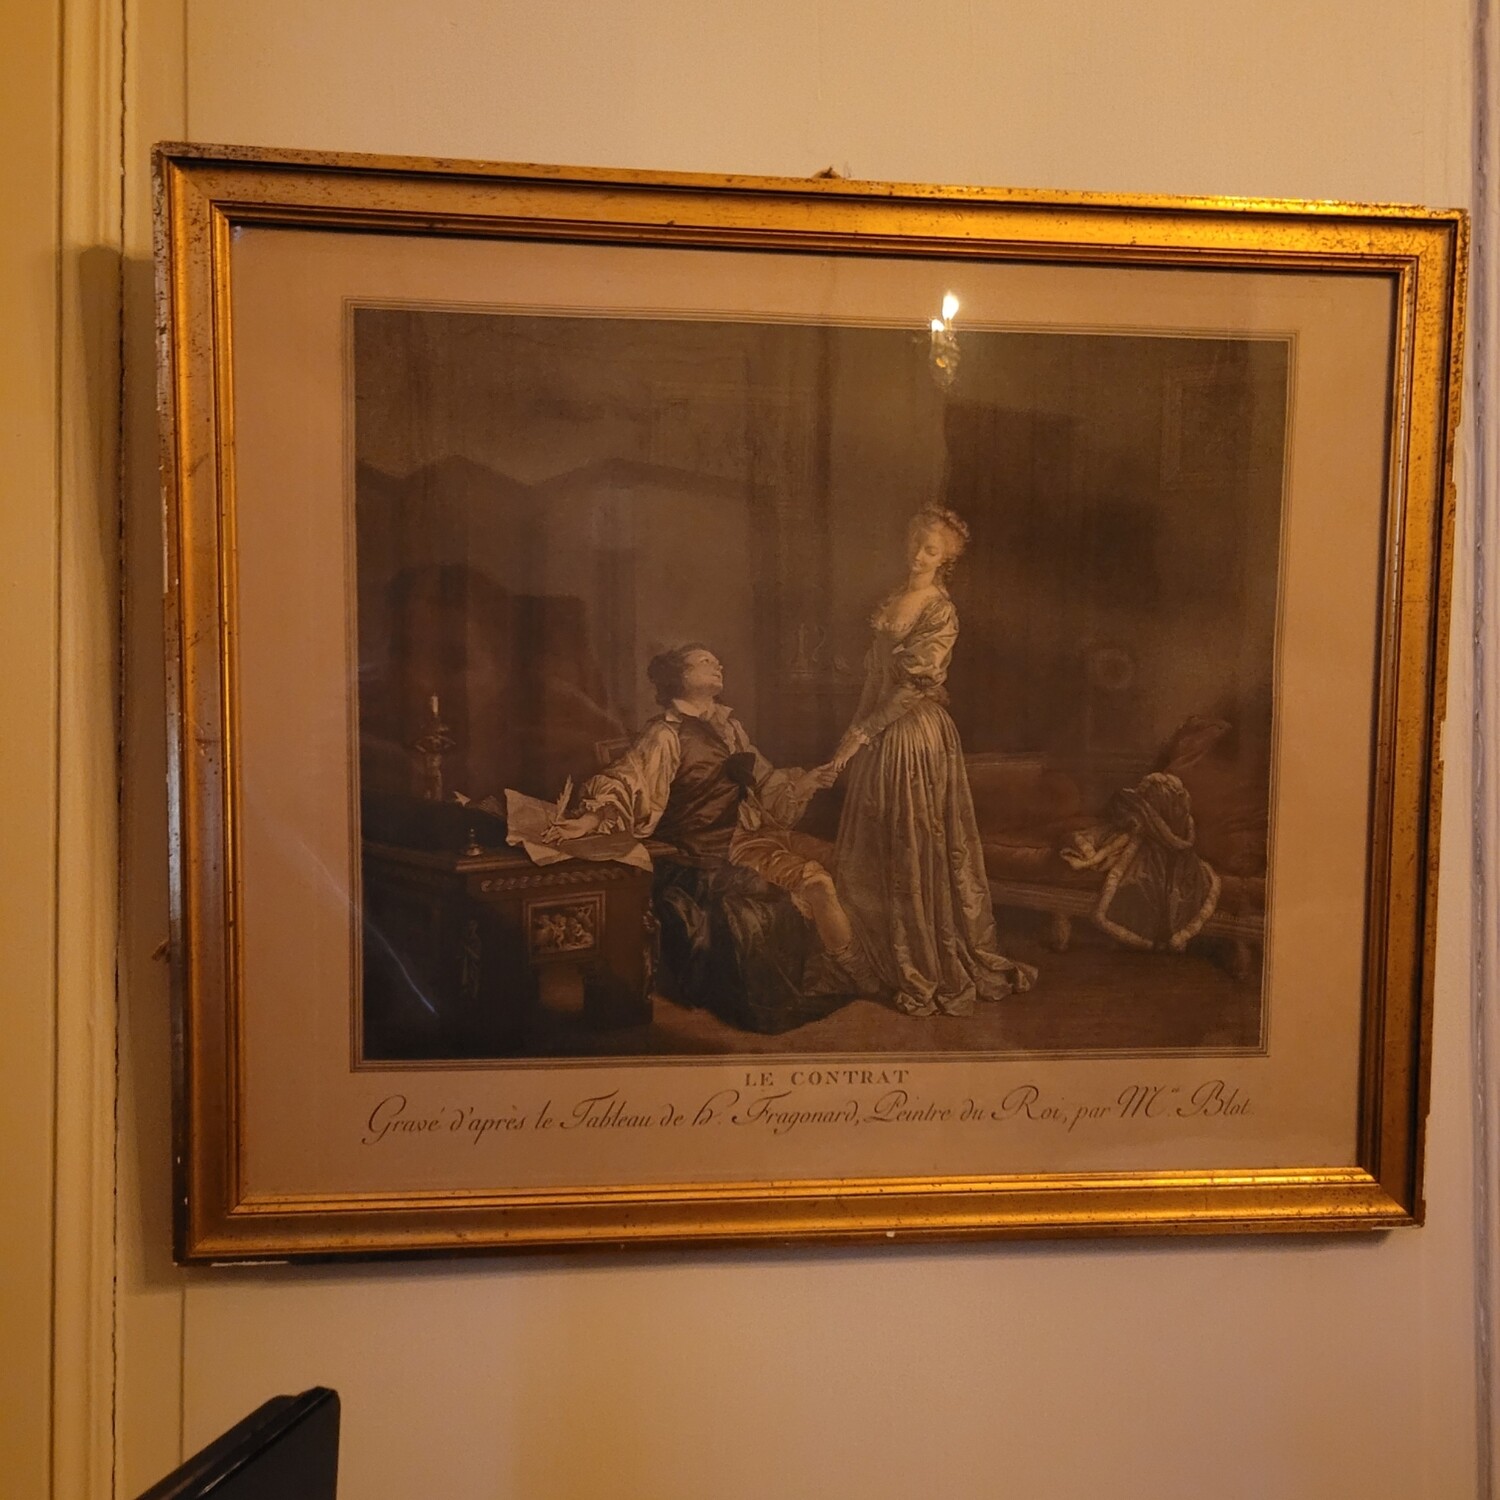 "LE CONTRAT, Gravé d'après le Tableau de la Fragonard, Peintre du Roi, par Mce Blot" 51x61cm